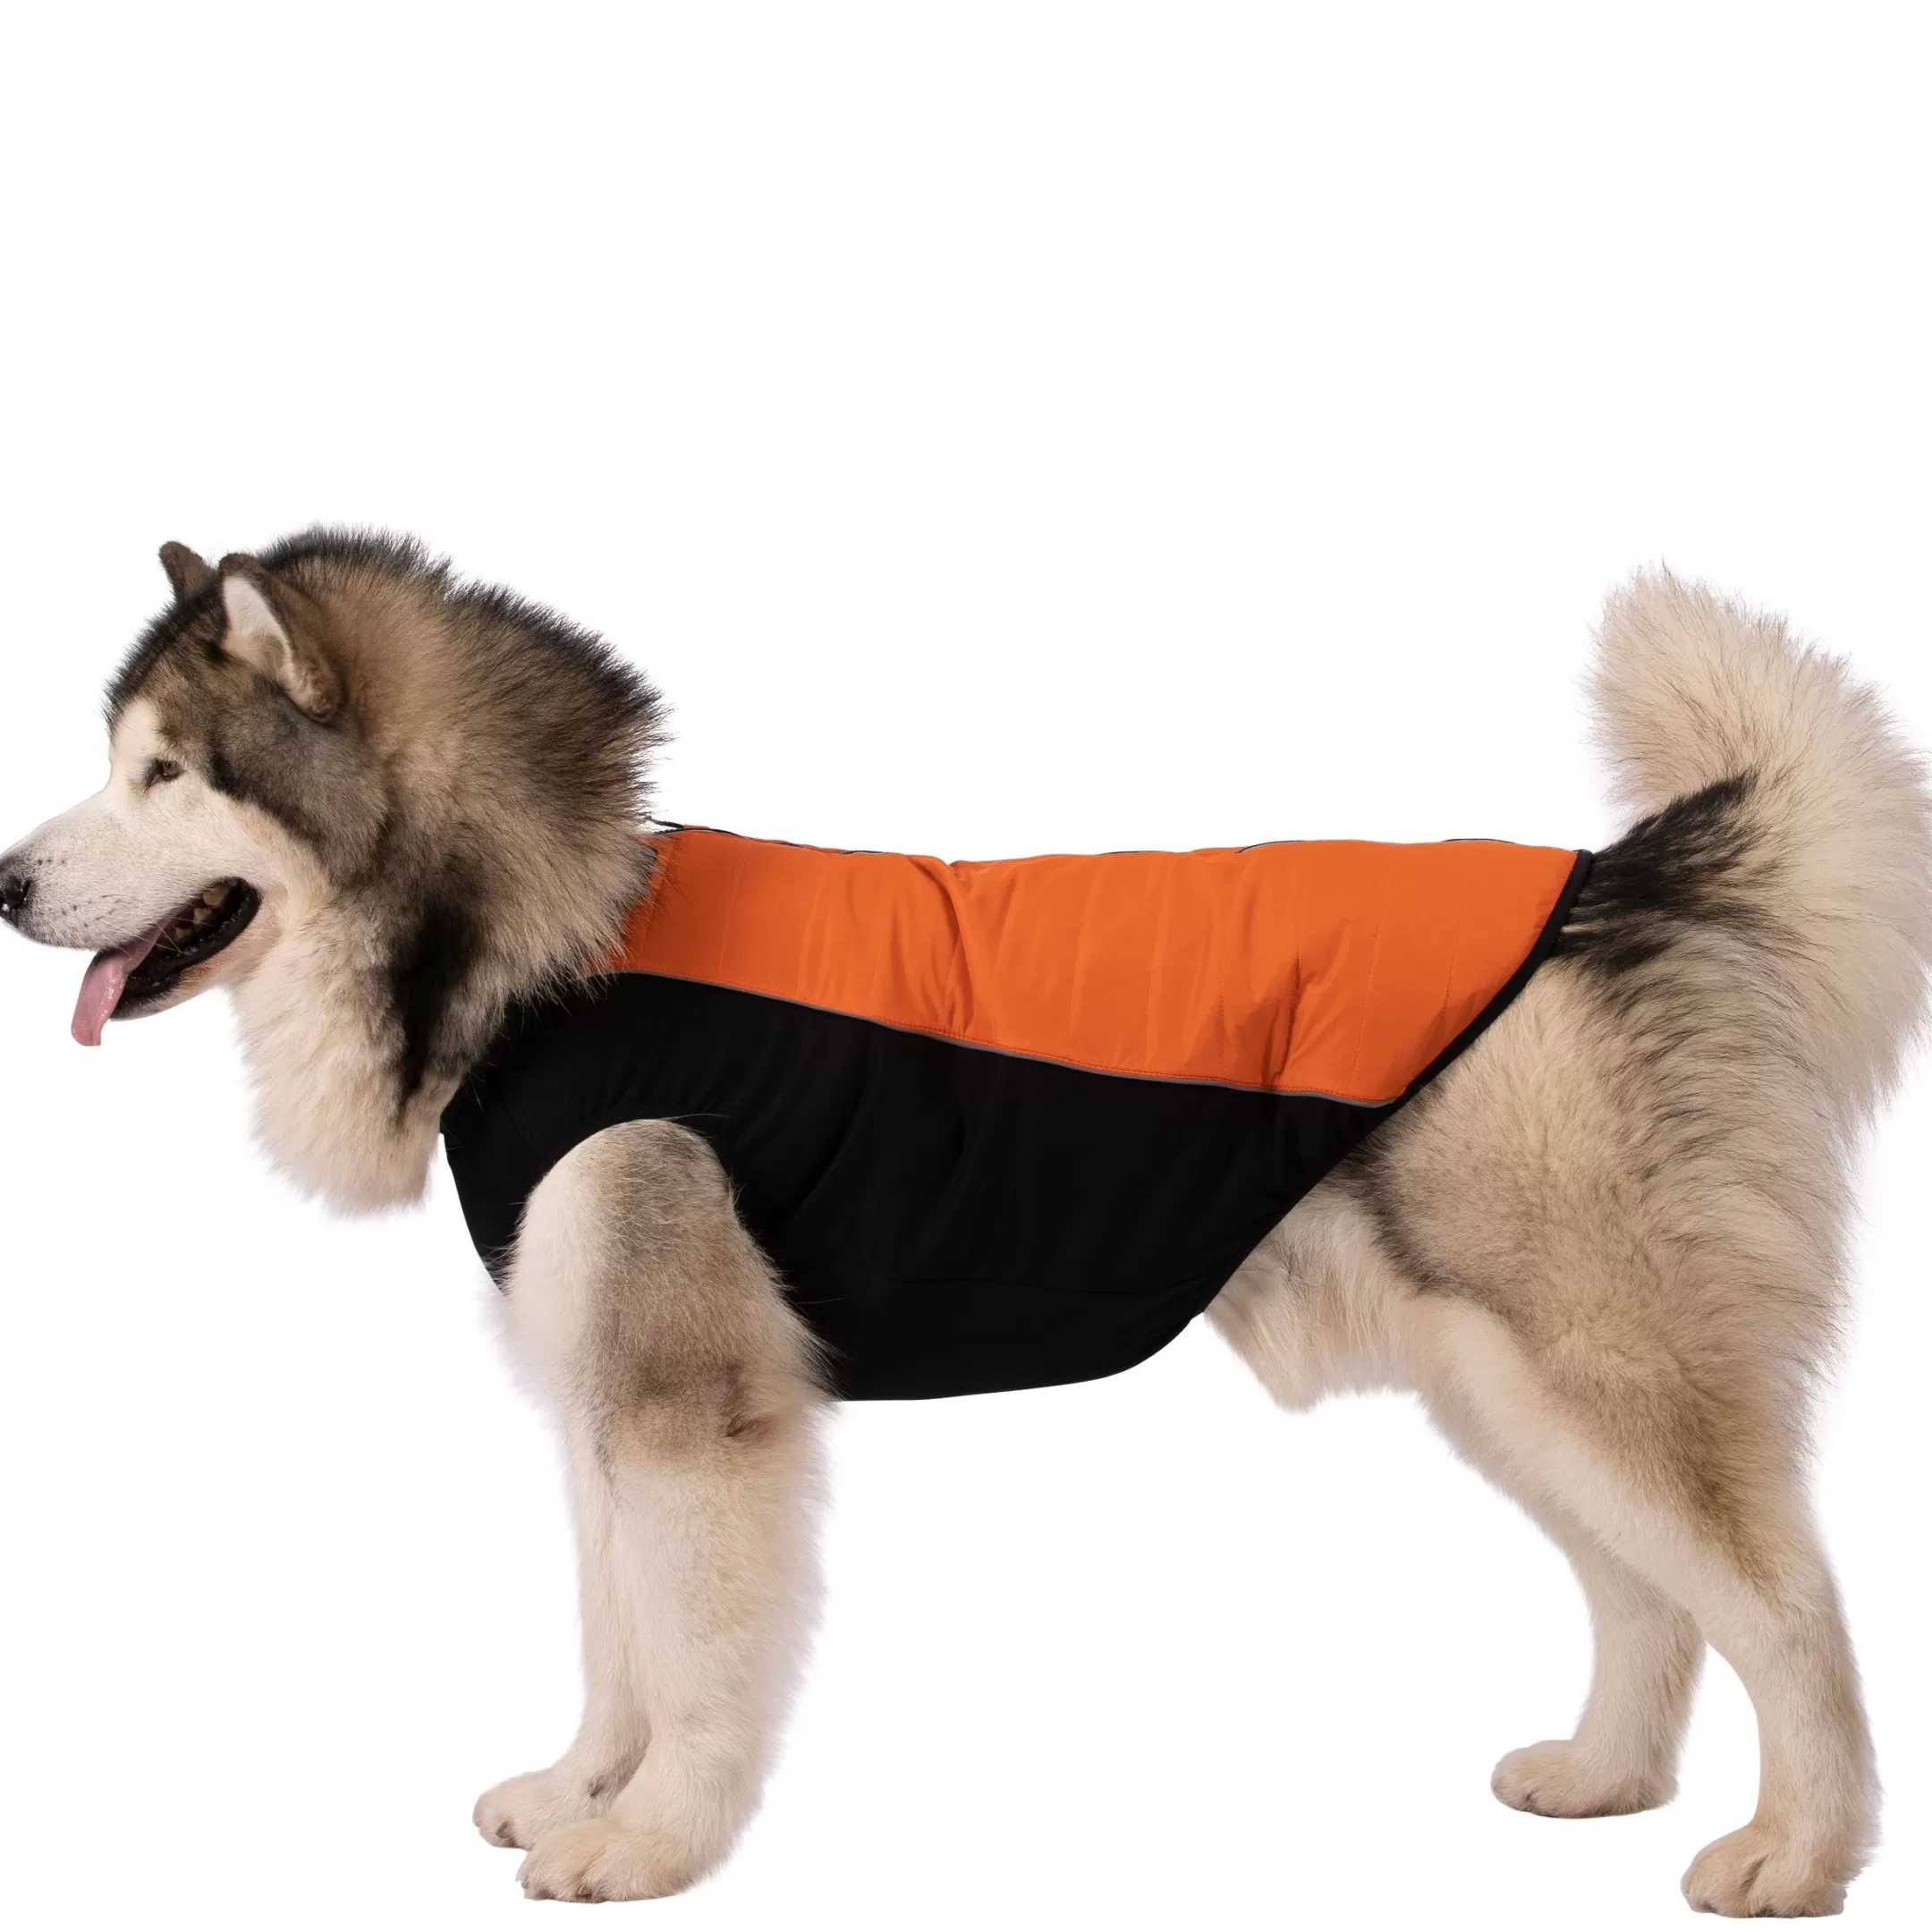 Trepaws Extra Large Dog Jacket Beedle - Black & Burnt Orange | Trespass Store